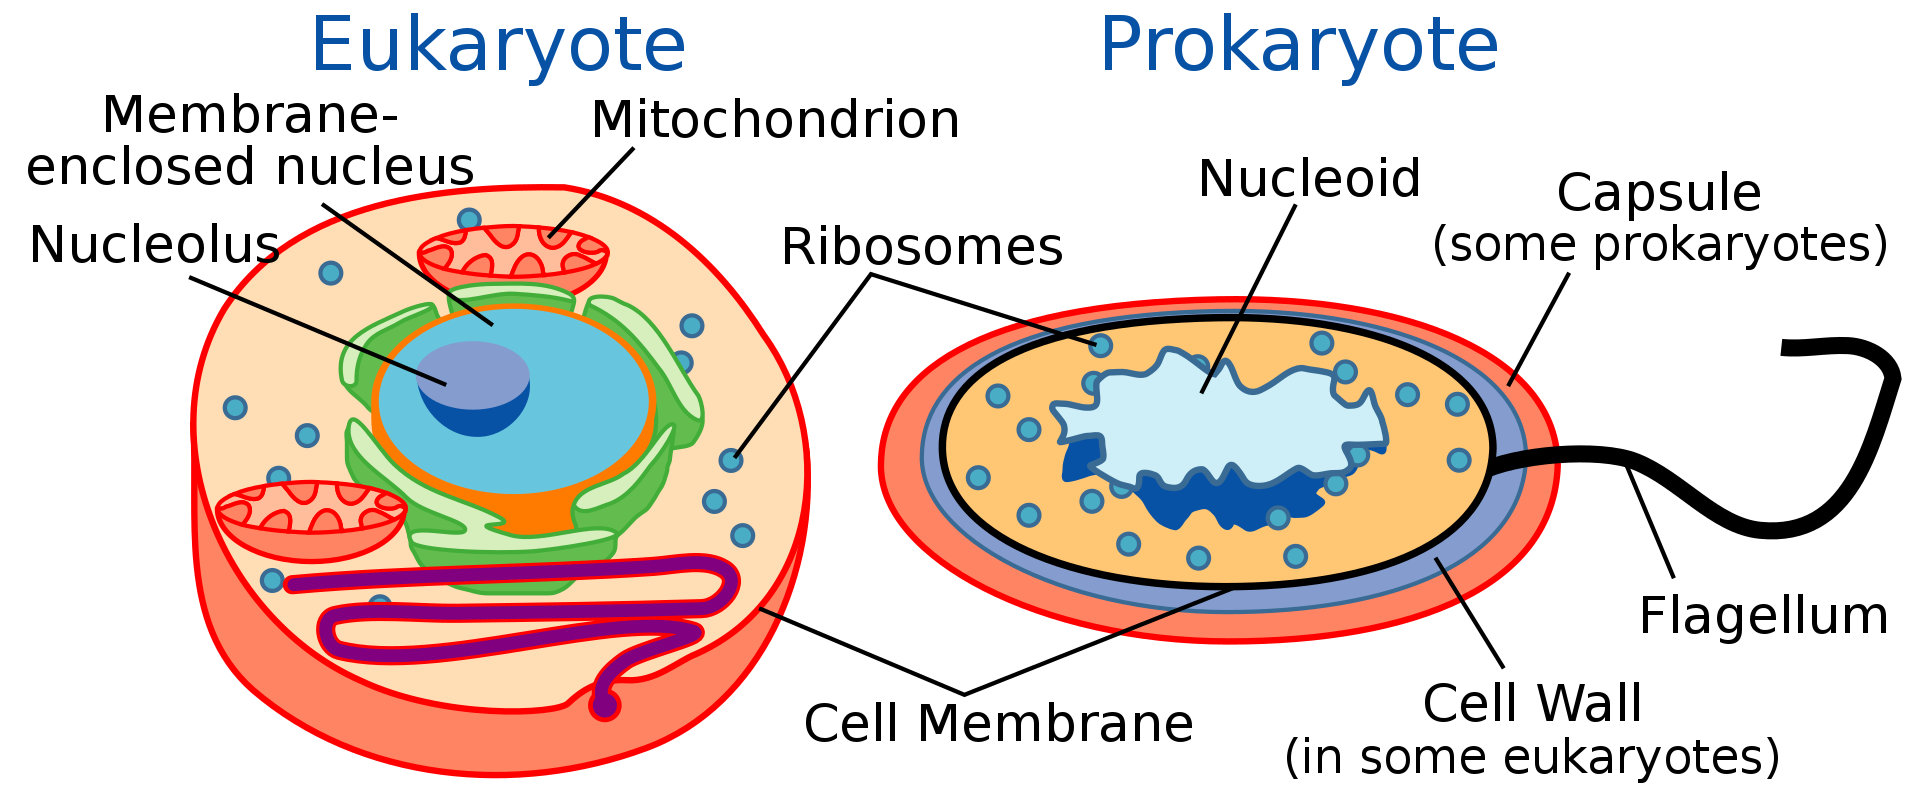 진핵생물(eukaryote)와 원핵생물(prokaryote)의 구조를 비교한 그림입니다. 진핵생물은 막으로 싸인 핵(membrane-enclosed nucleus)이 있는 반면, 원핵생물은 핵 없이 유전체가 노출되어 있습니다(nucleoid).